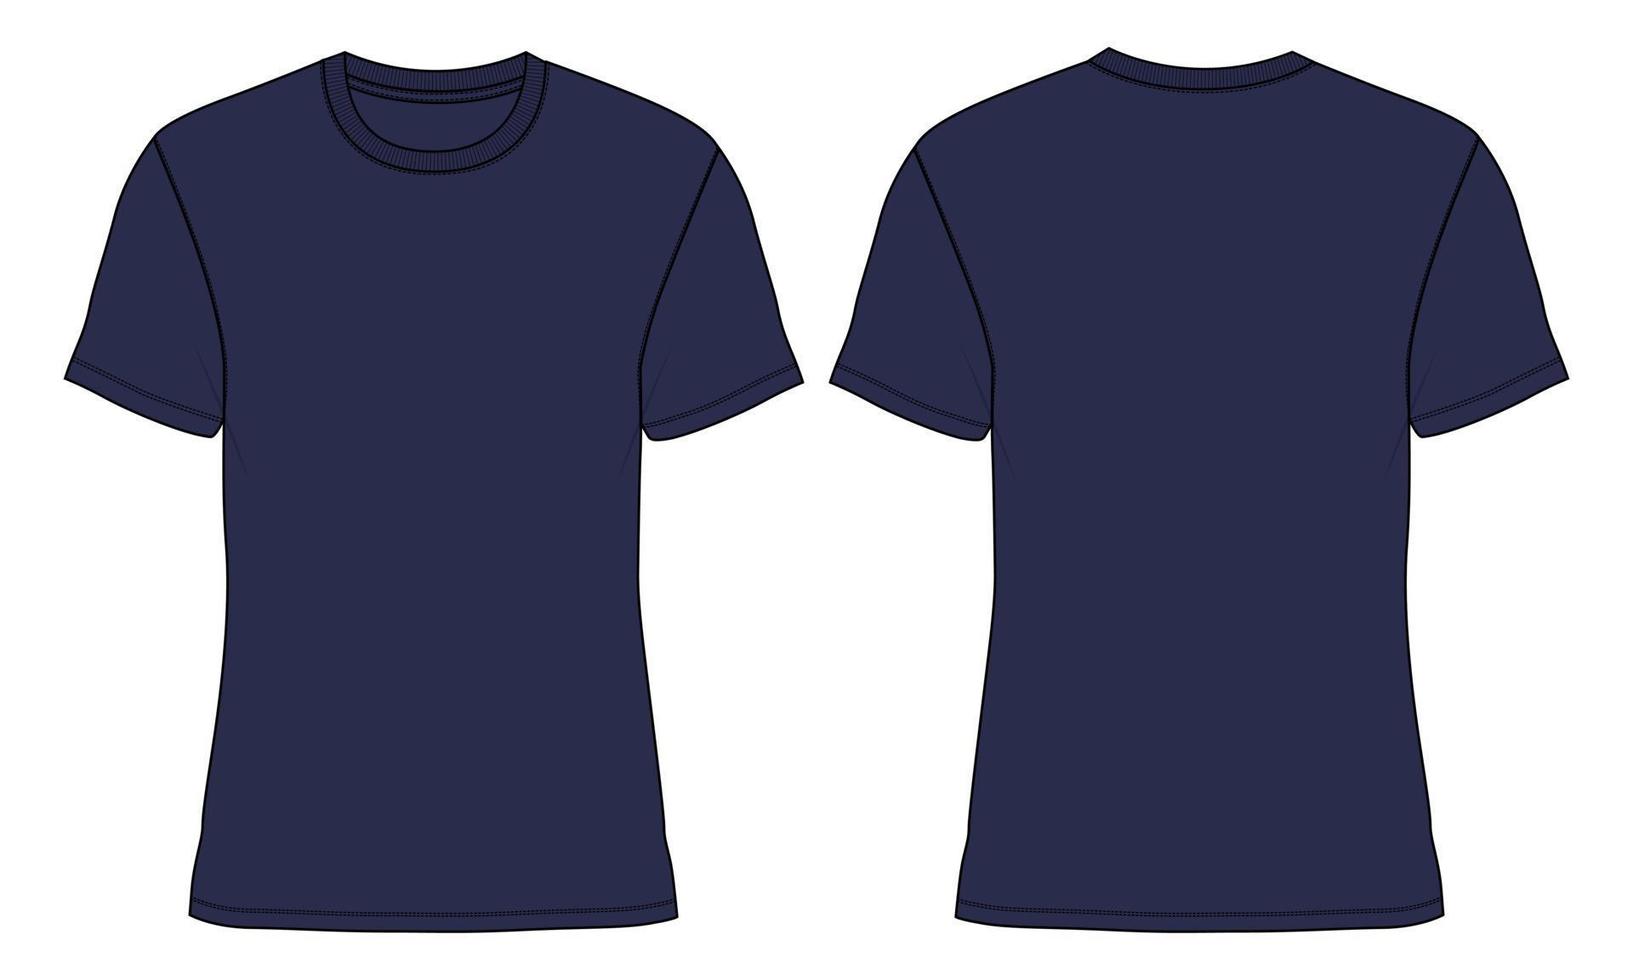 t-shirt de manga curta de ajuste regular, moda técnica, esboço plano, modelo de ilustração vetorial, vistas frontal e traseira. vetor